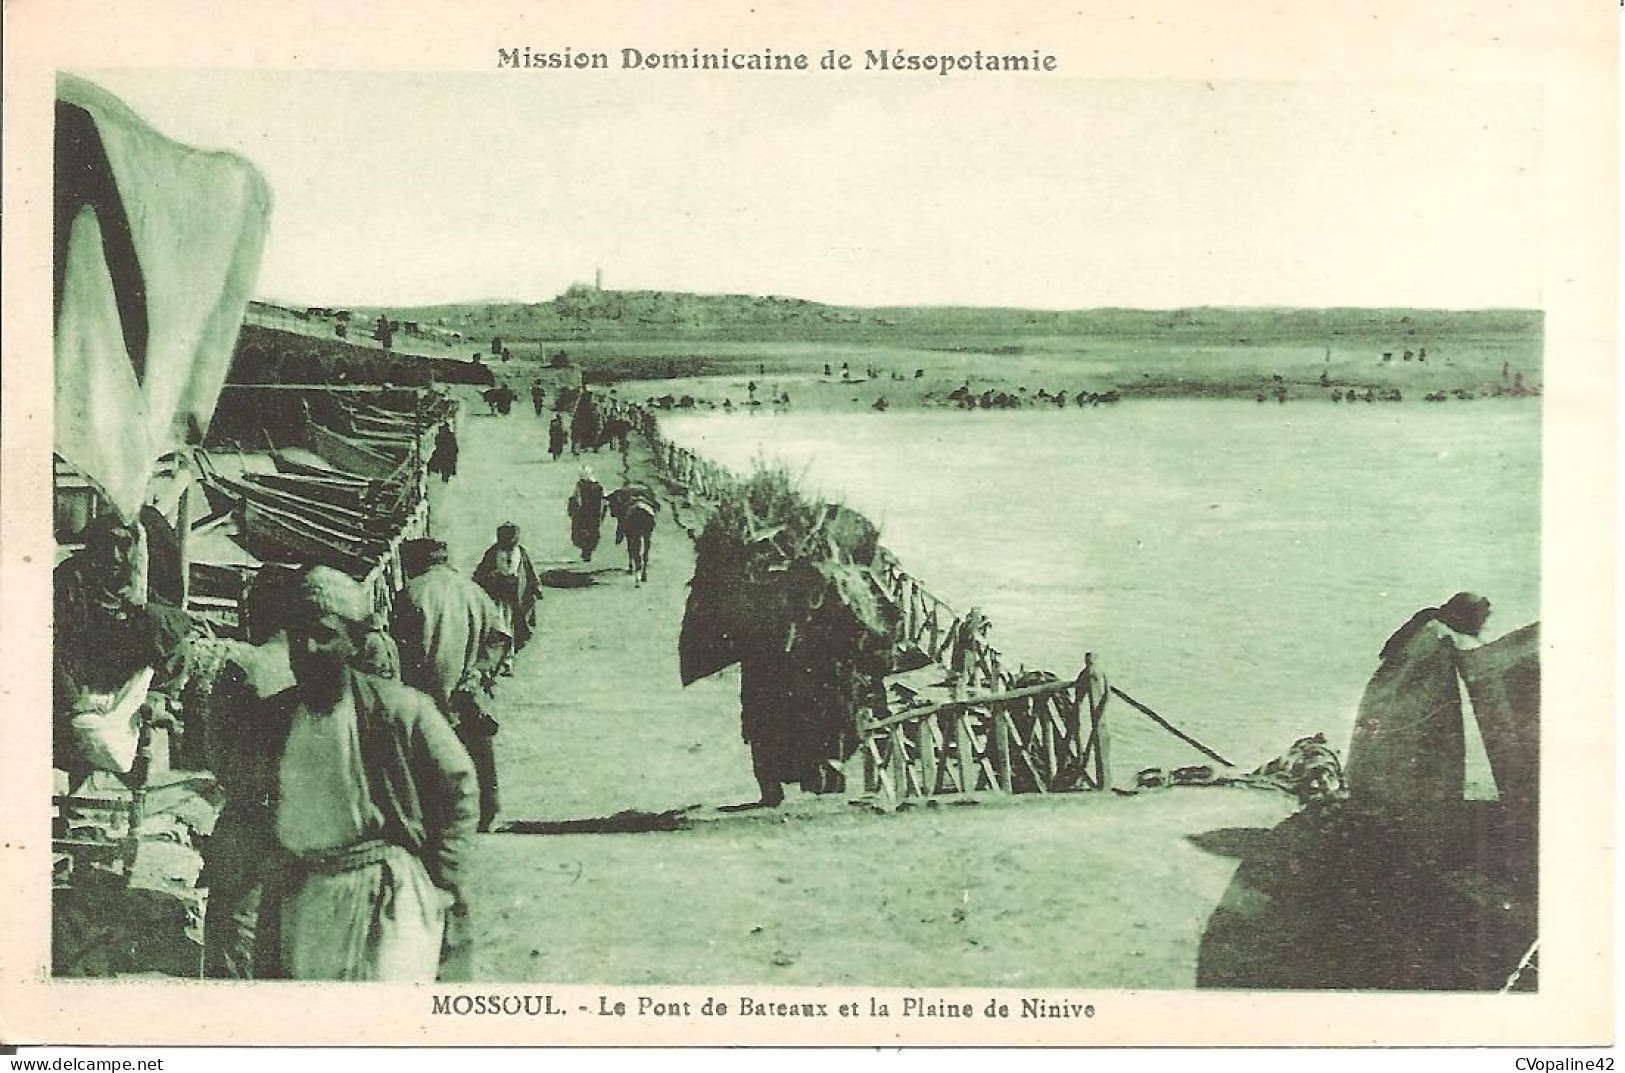 MOSSOUL (IRAQ) Le Pont De Bateaux Et La Plaine De Ninive (MISSION DOMINICAINE DE MESOPOTAMIE) - Irak